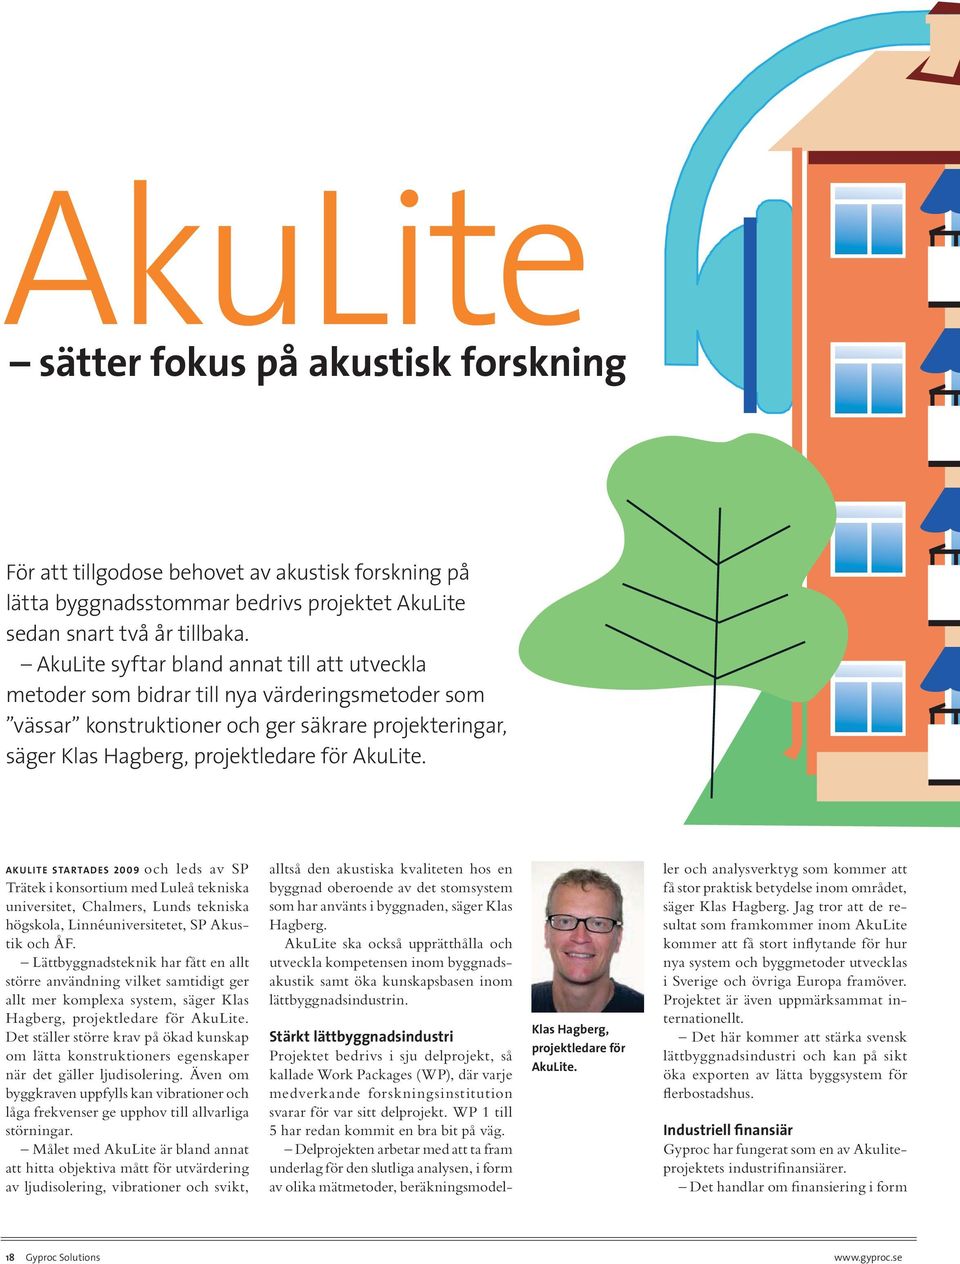 AKULITE STARTADES 2009 och leds av SP Trätek i konsortium med Luleå tekniska universitet, Chalmers, Lunds tekniska högskola, Linnéuniversitetet, SP Akustik och ÅF.